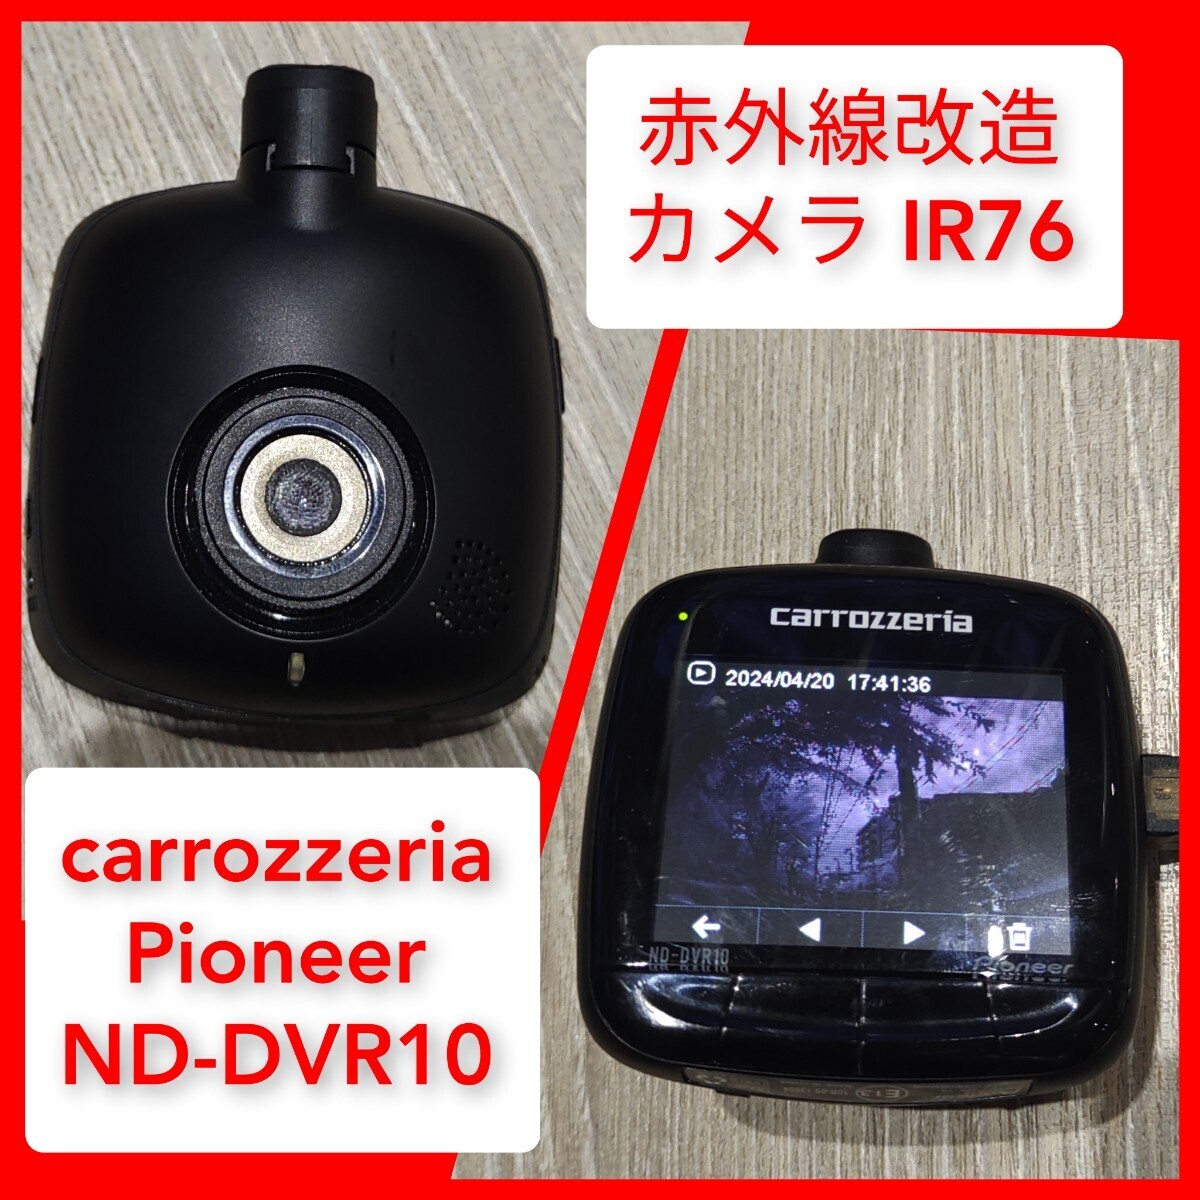 赤外線改造カメラ Pioneer ND-DVR10 carrozzeria 動作 IR76 モノクロ 改造済 ドライブレコーダー 広角127° 207万画素 FHD パイオニア GPS